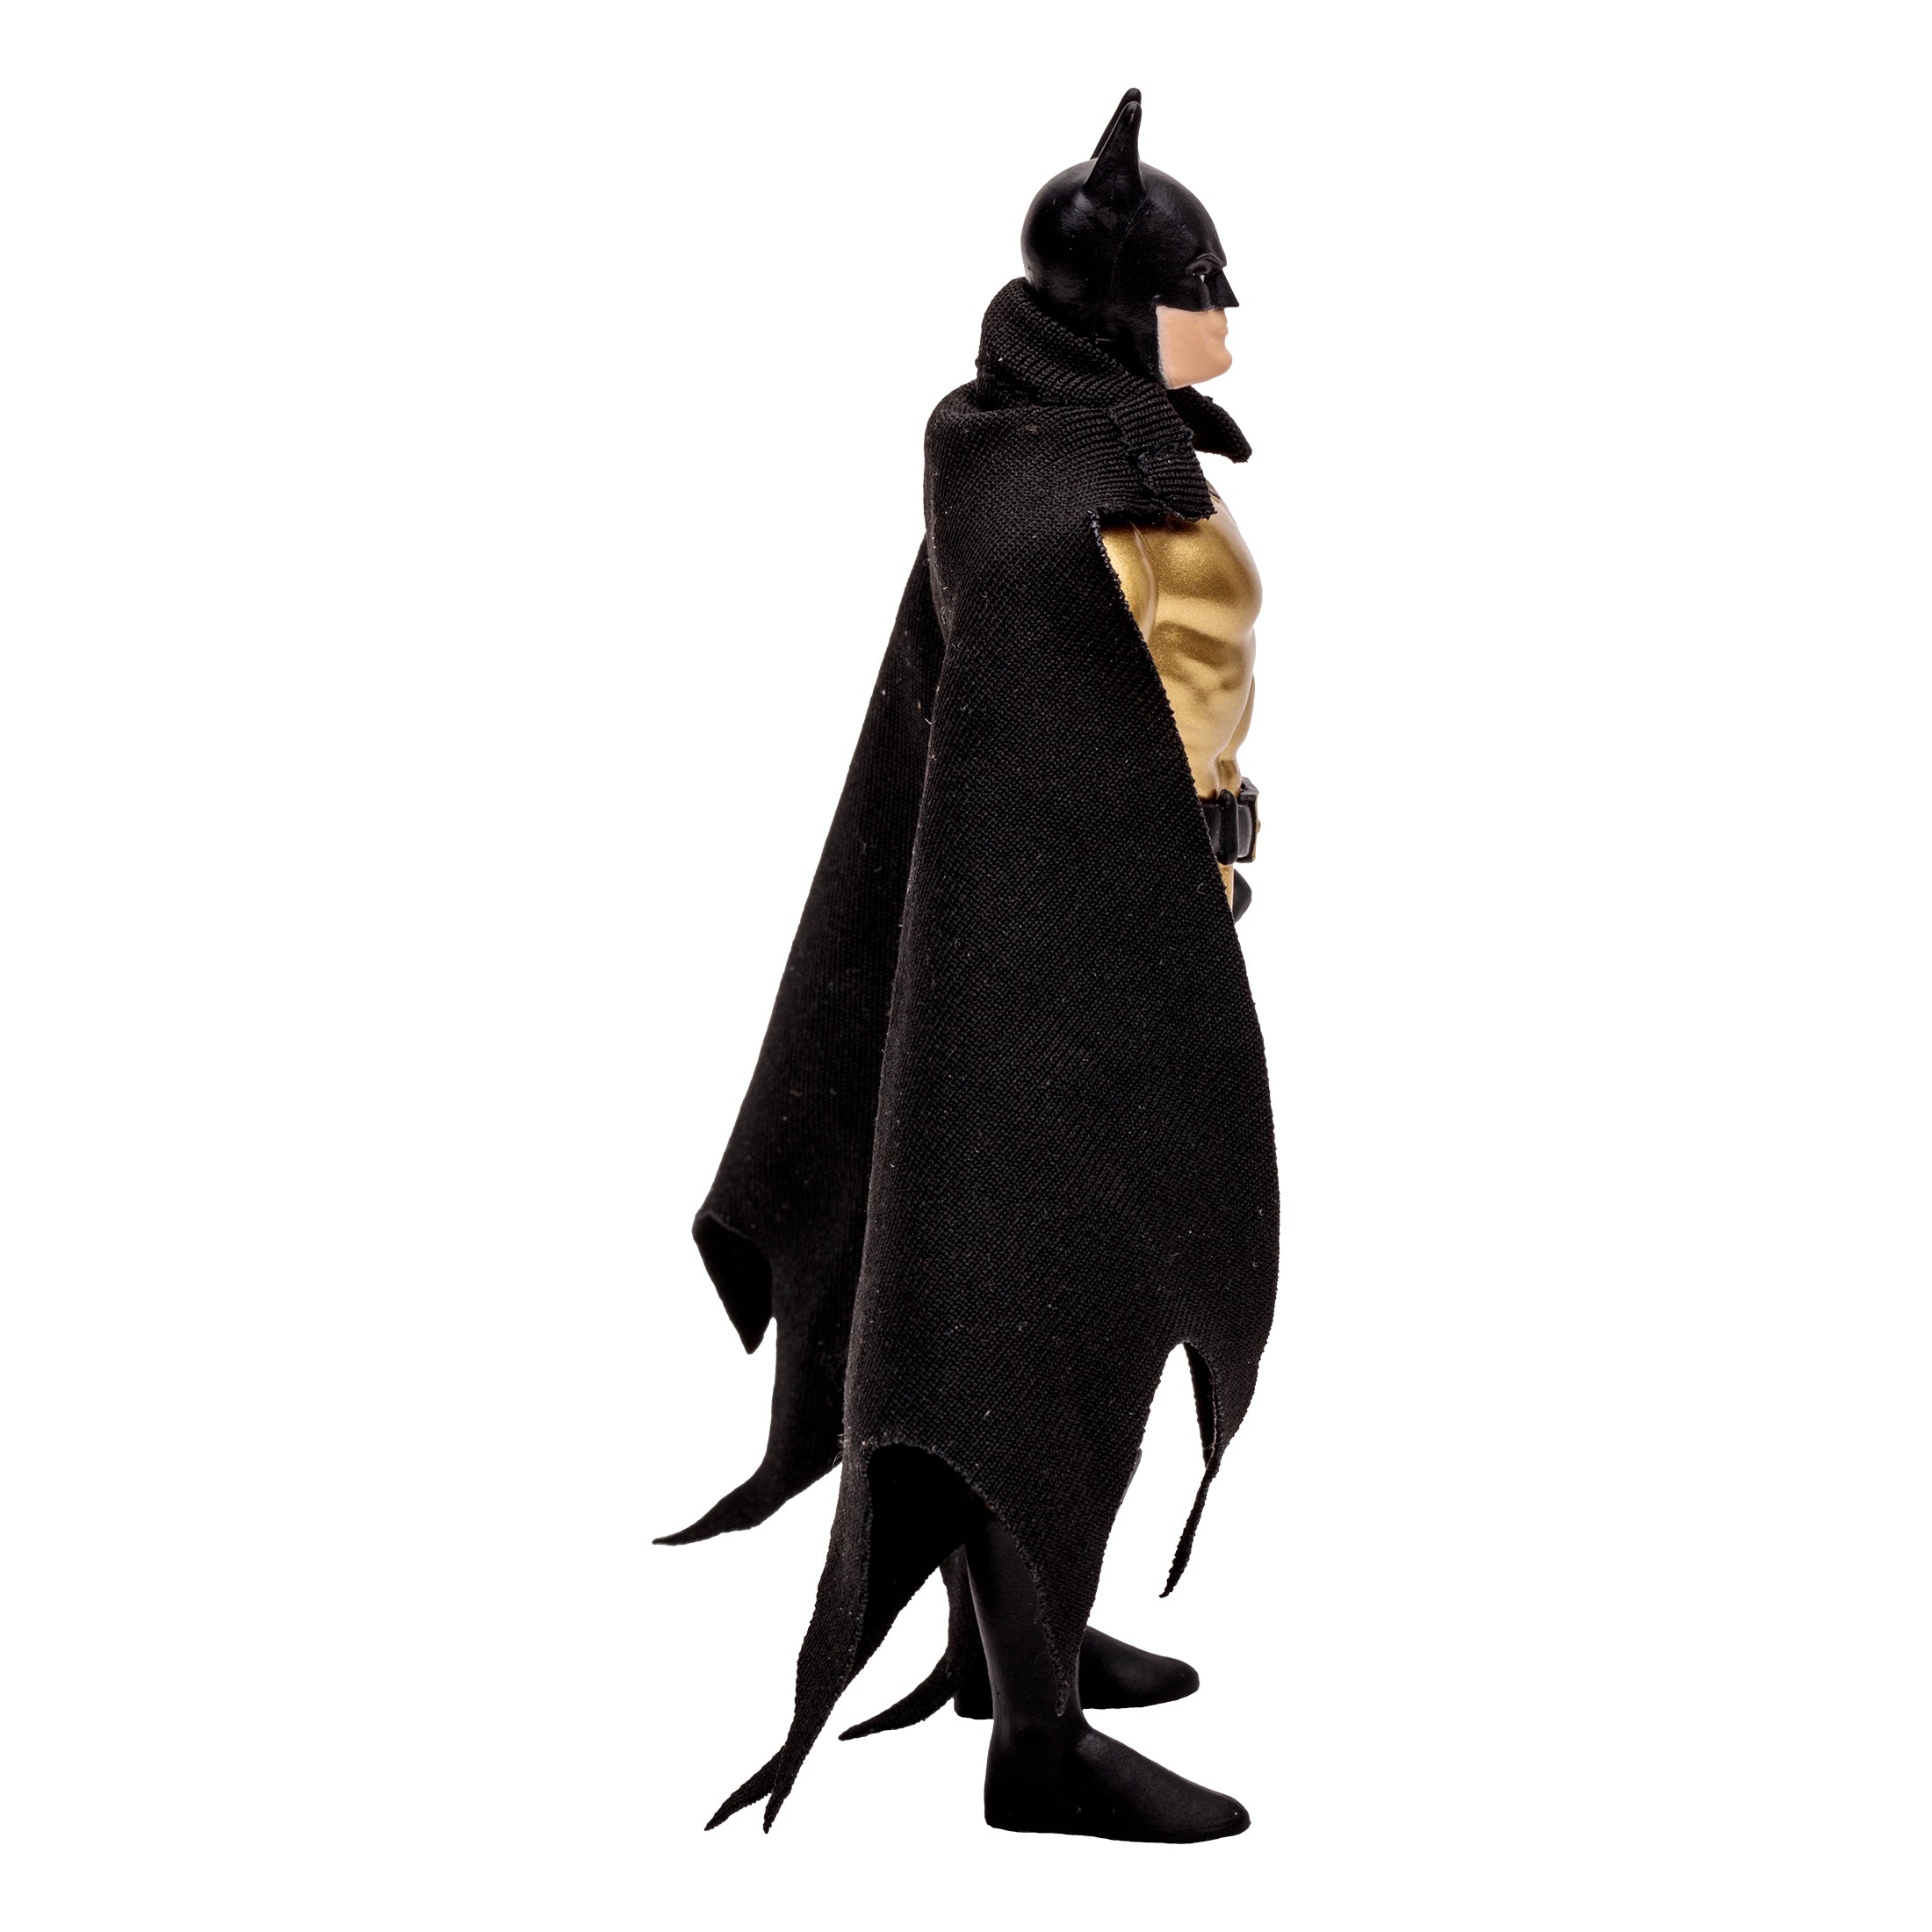 DC Direct Super Powers Figura de Accion: DC Comics Batman - Batman Gold Variant 4.5 Pulgadas